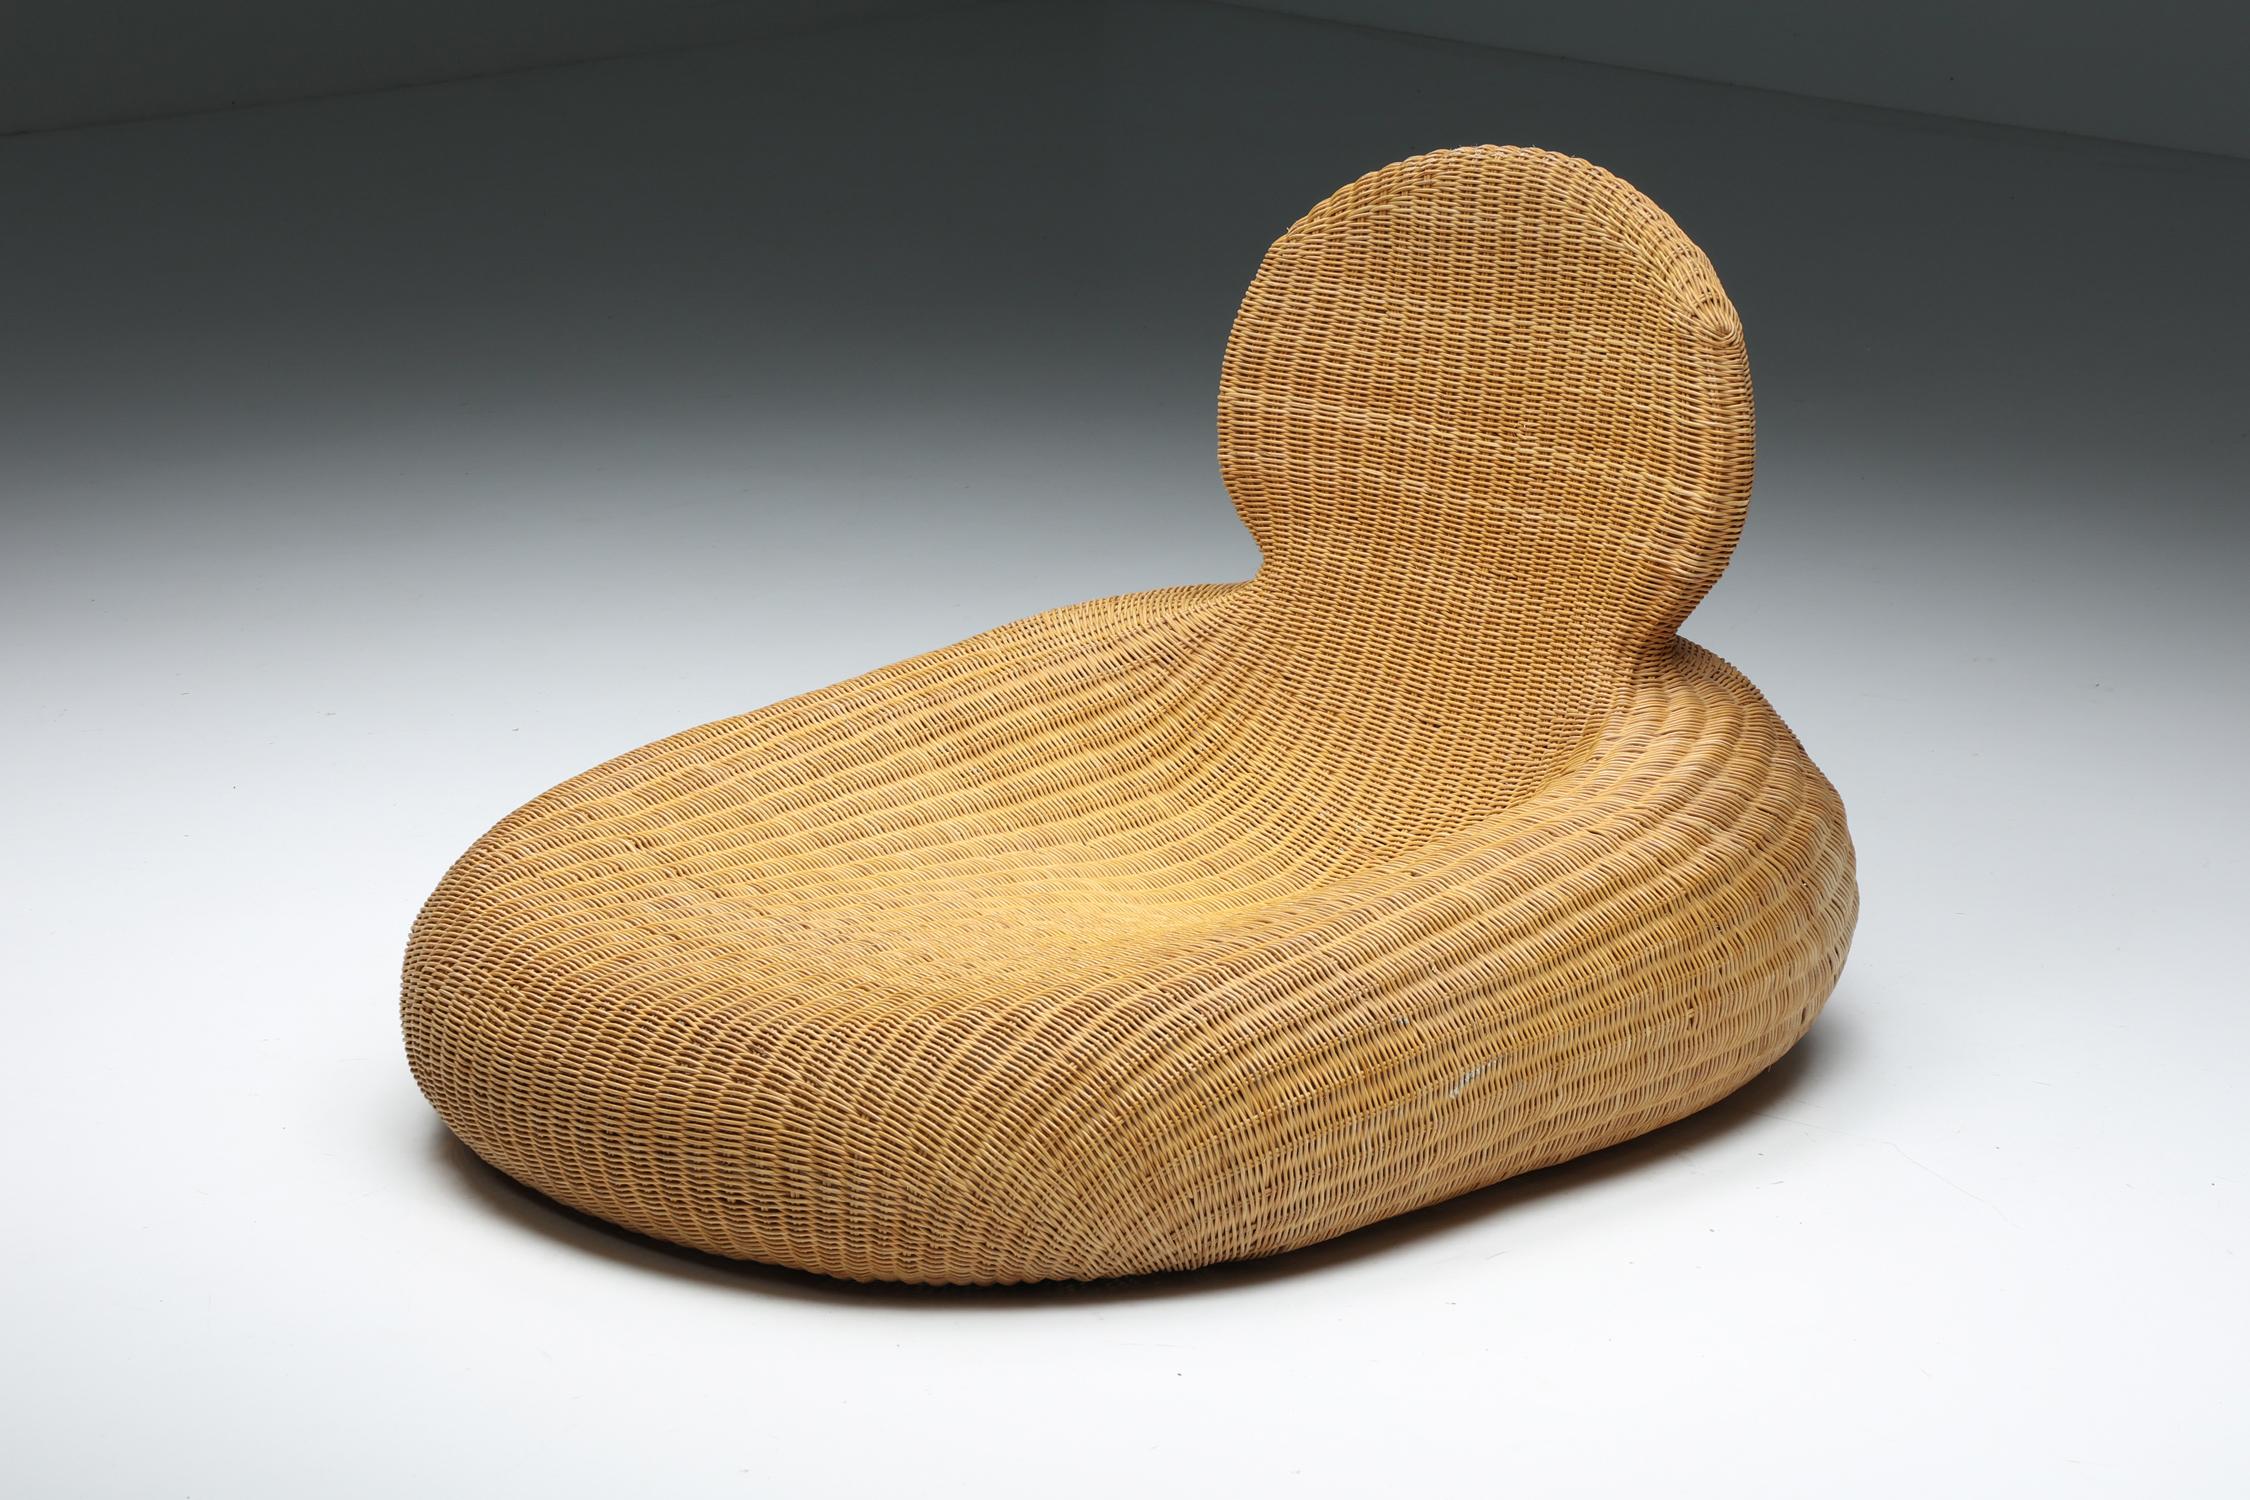 Ikea a produit la chaise longue Storvik en rotin et osier de Carl Öjerstam ;

Chaise longue scandinave moderne en rotin conçue par Carl Öjerstam pour Ikea. Cette conception a été réalisée à partir d'un cadre léger en bambou. La chaise a été produite